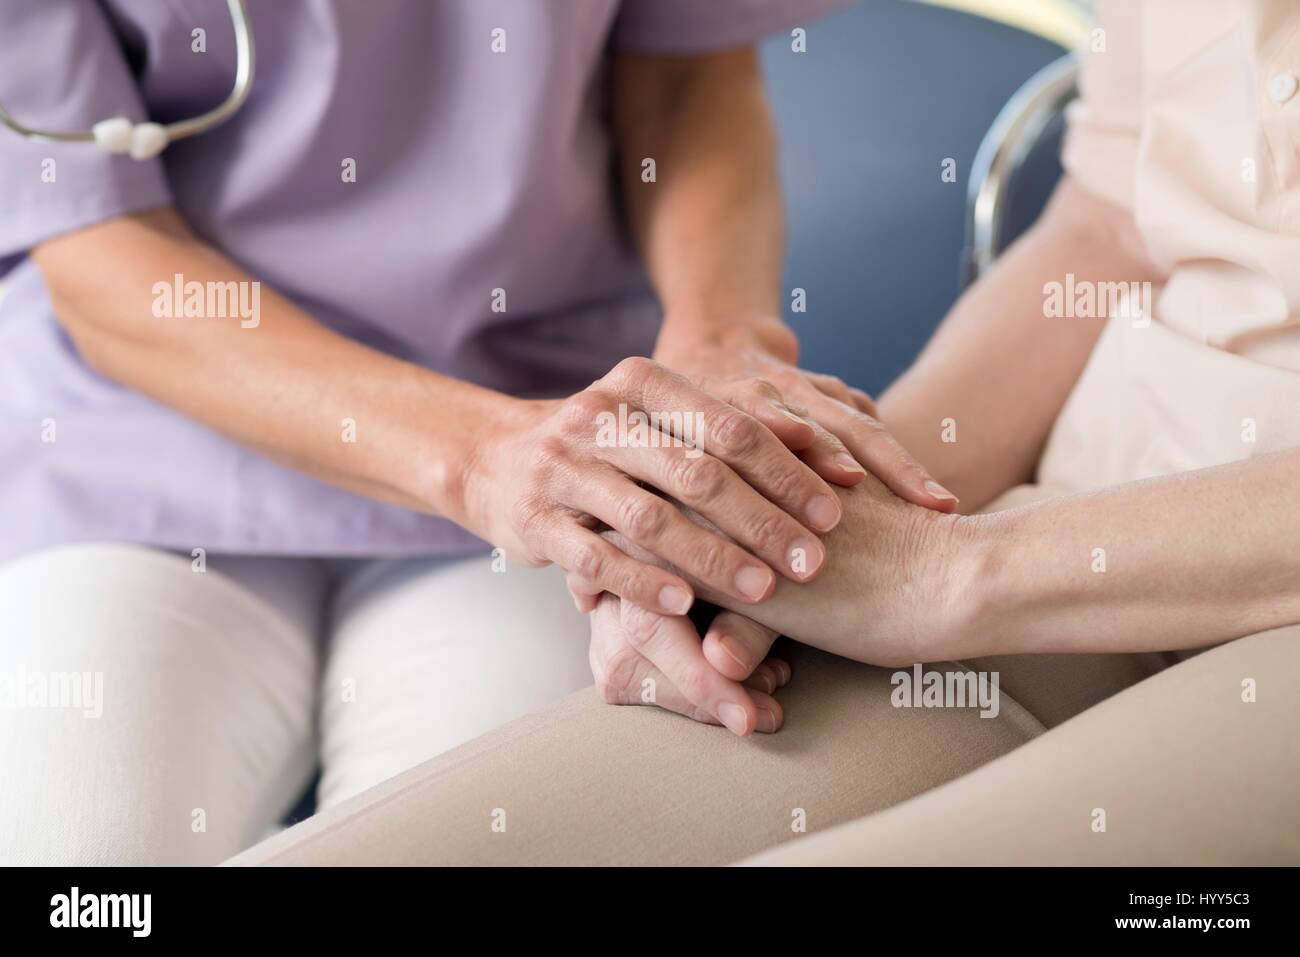 Trabajador del cuidado de la mujer ocupar las manos. Foto de stock